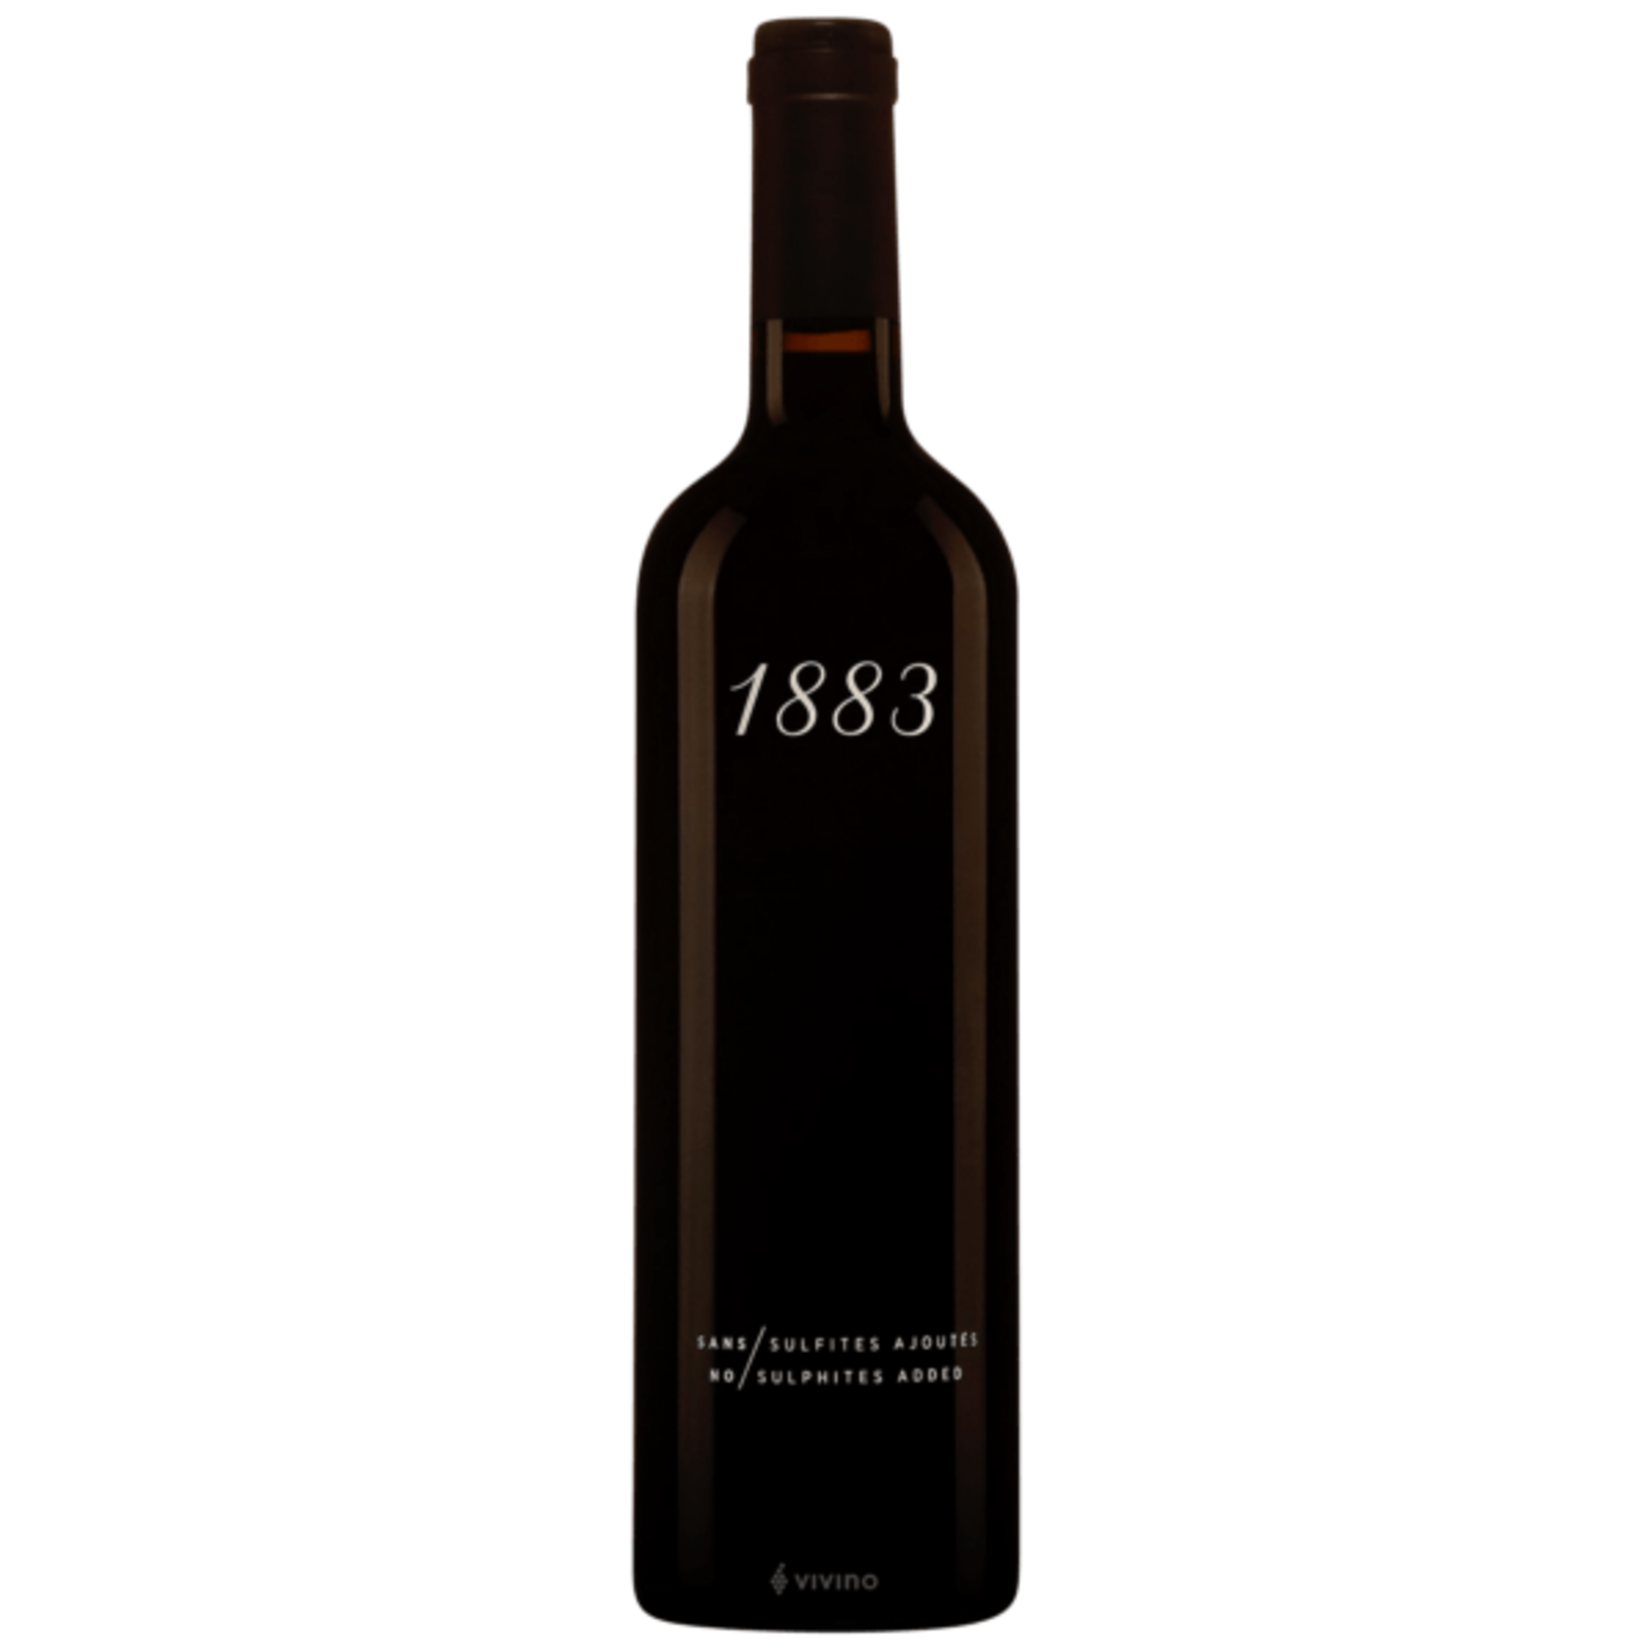 1883 Maison Sichel 2020 Vintage Red Wine Bordeaux France